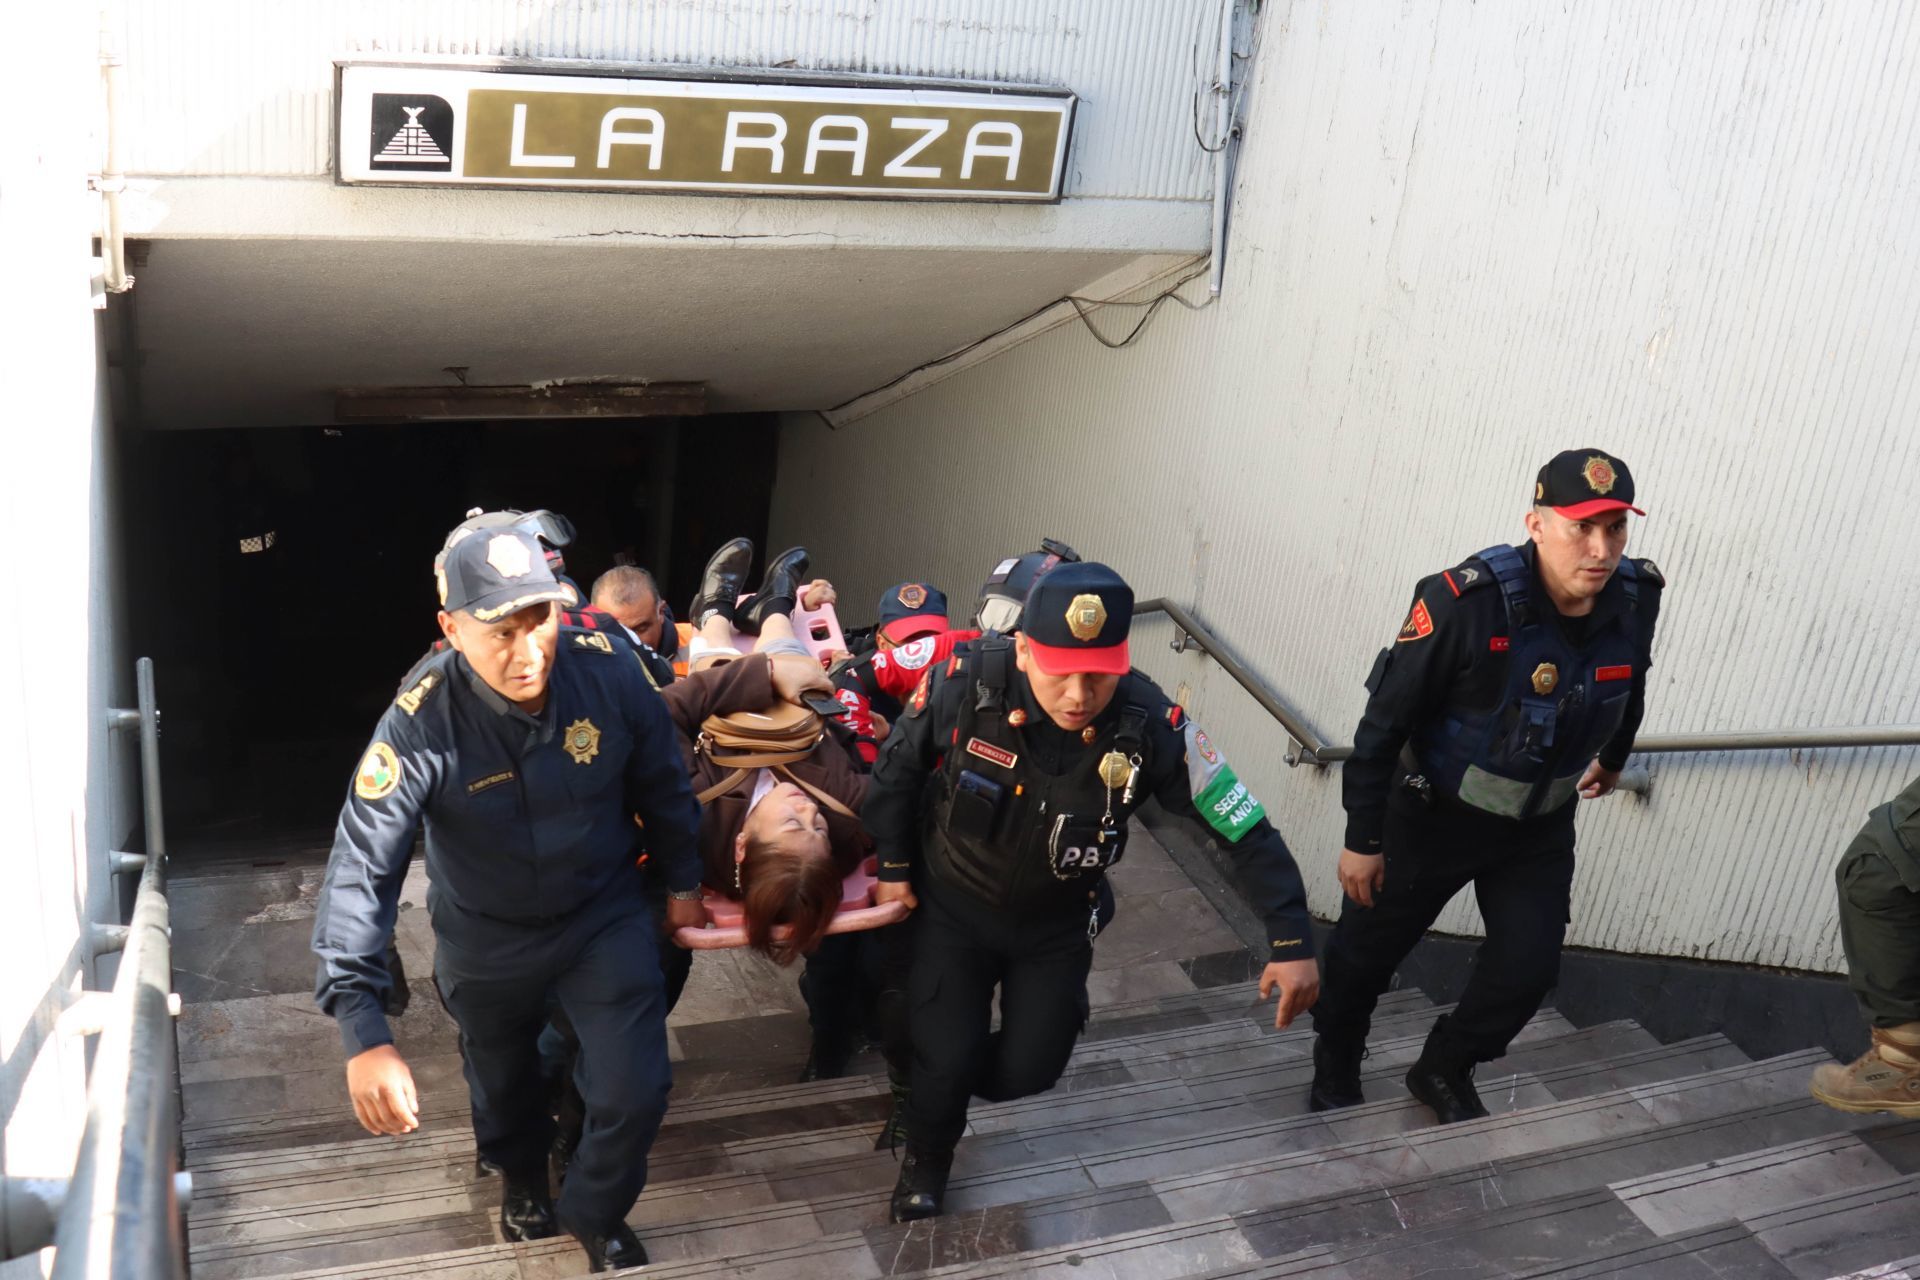  Servicios de emergencia se movilizaron para trasladar a las personas heridas del choque de trenes del Metro ocurrido entre las estaciones Potrero y La Raza. 
FOTO: ROGELIO MORALES/CUARTOSCURO.COM